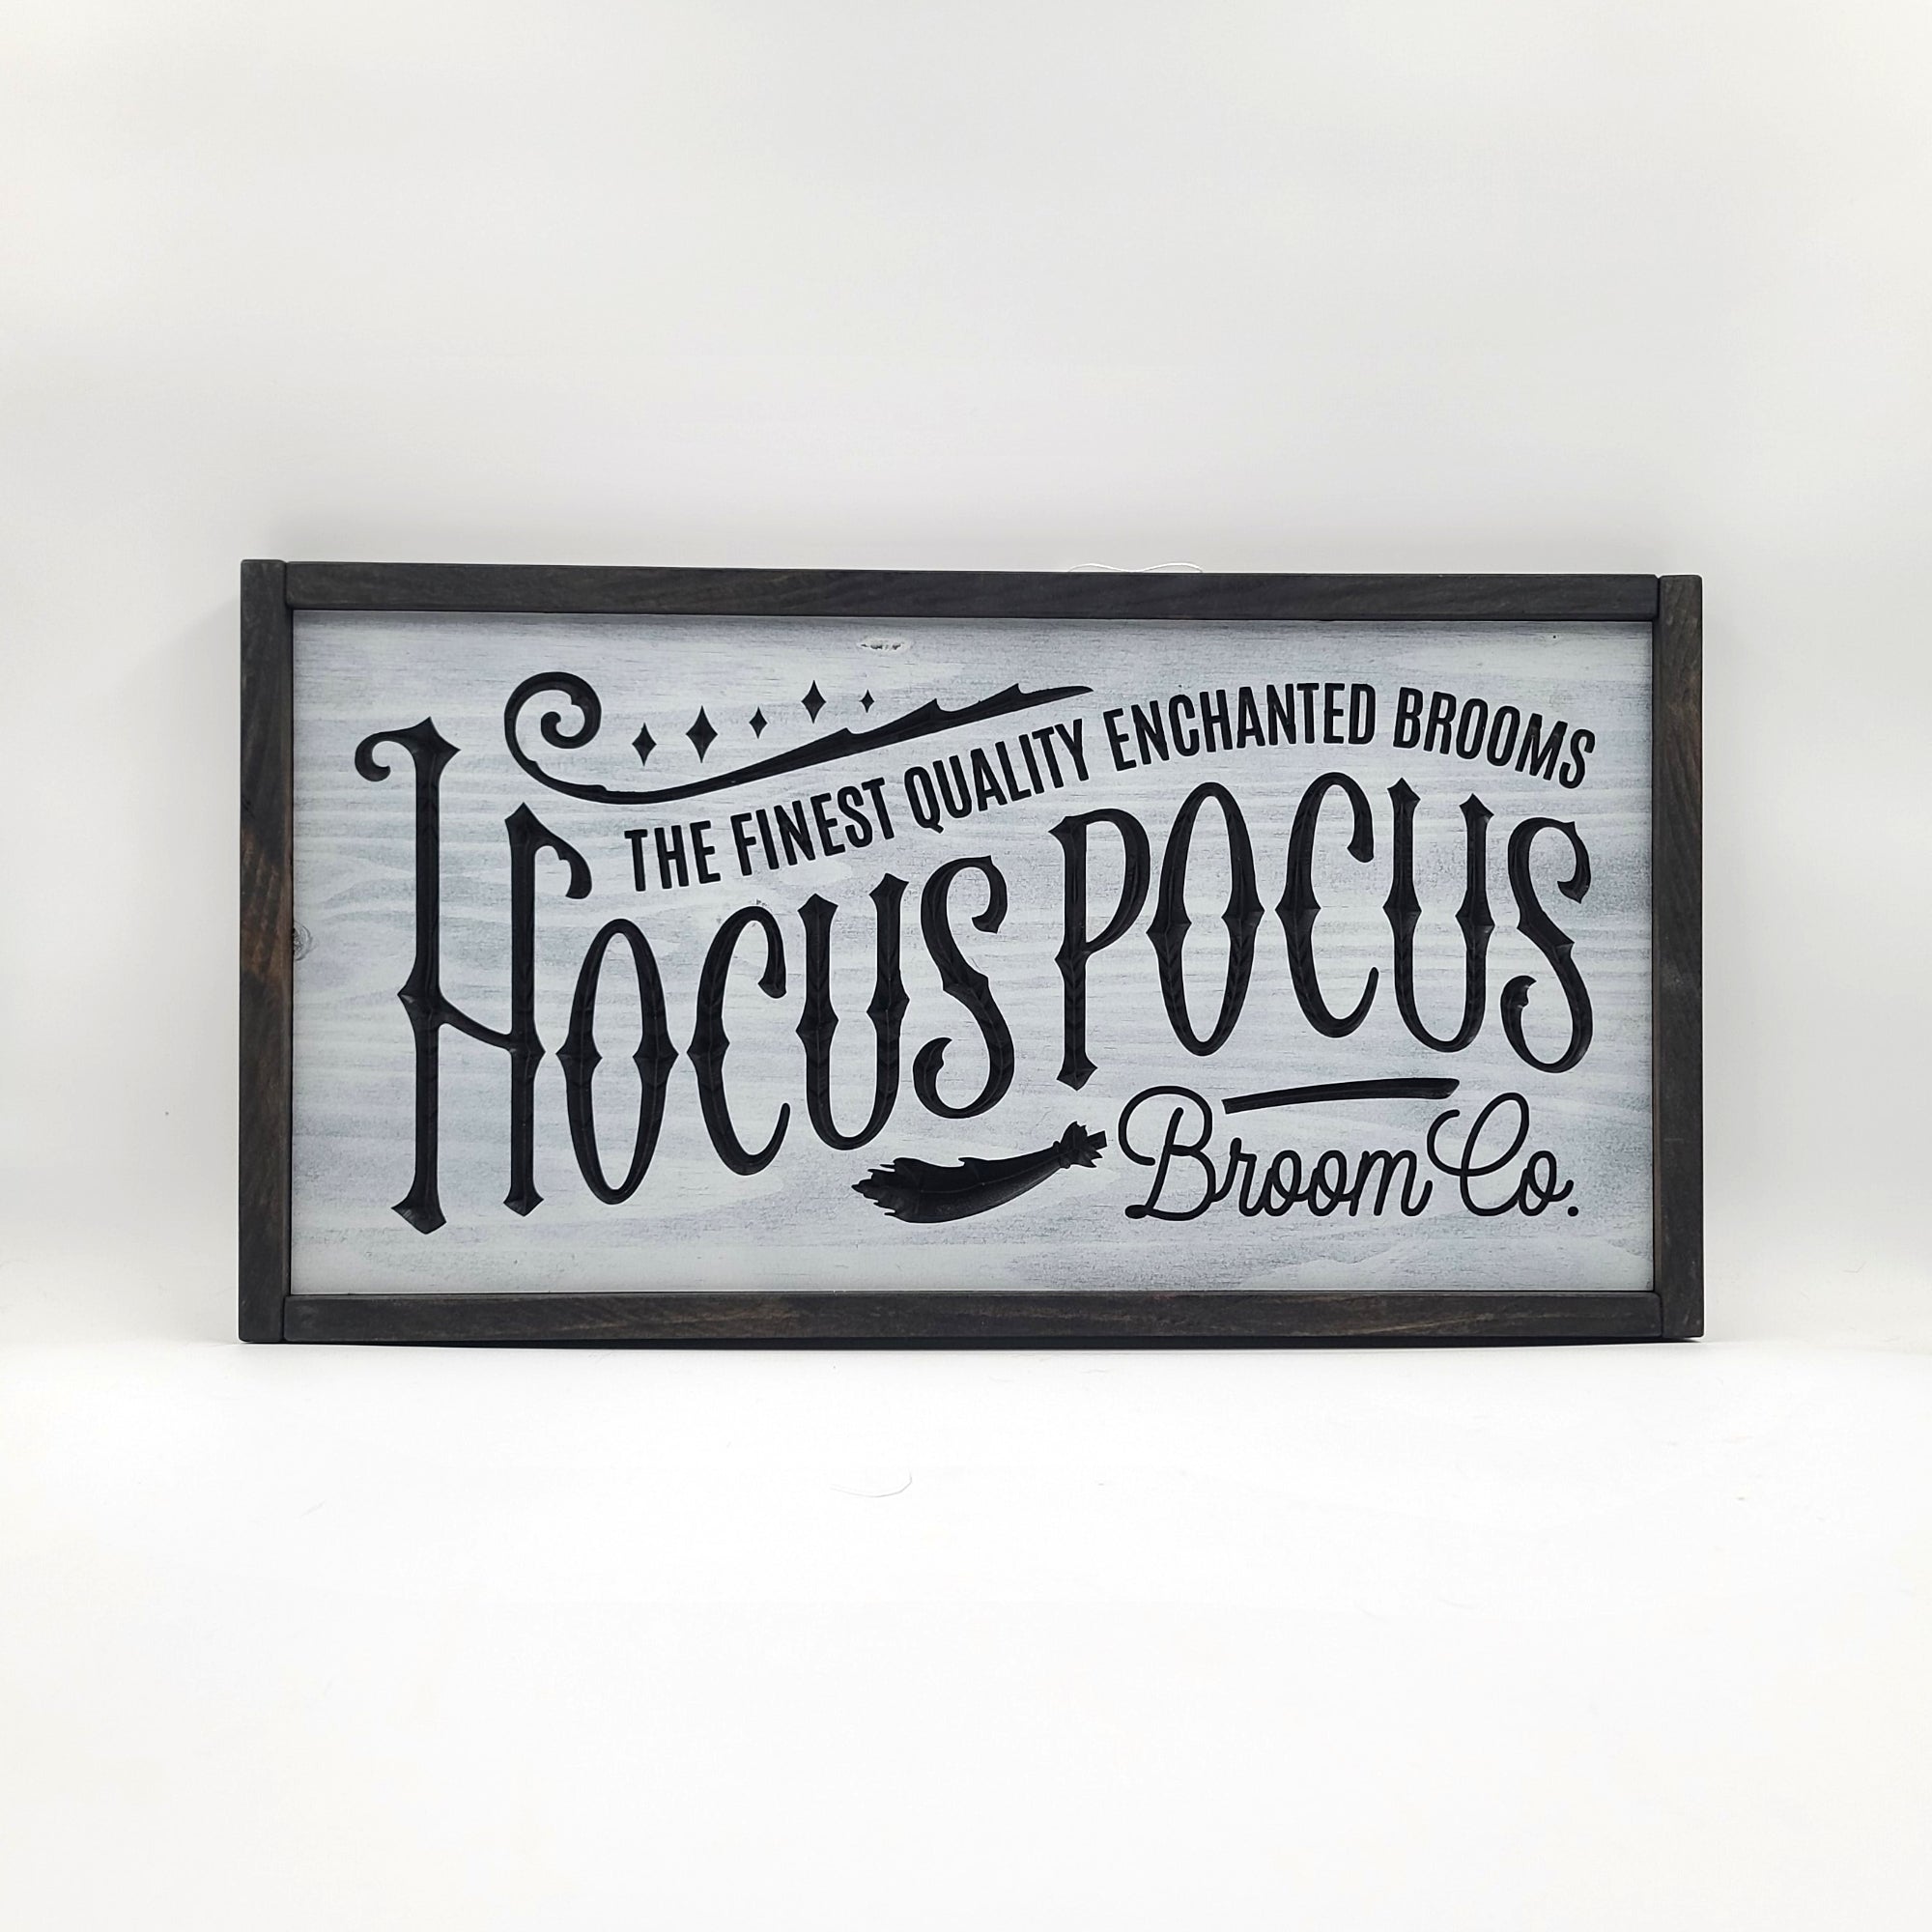 SWHS003 - Hocus Pocus Broom Co. Halloween Sign